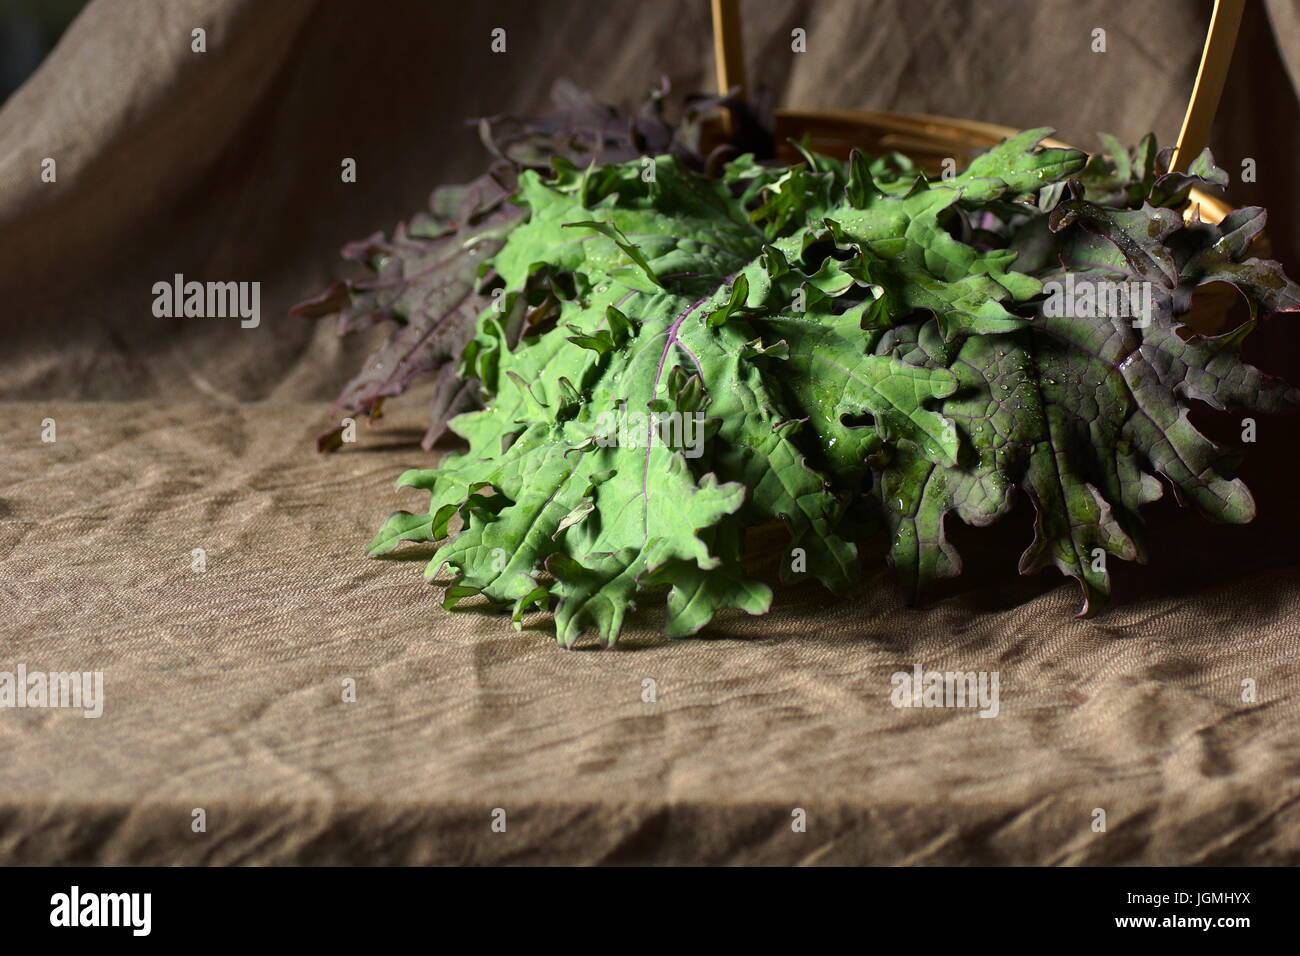 Stillleben mit verlässt russischen Roten Grünkohl. Roten russischen Kohl Blätter in einem Korb künstlerisch angeordnet. Stockfoto